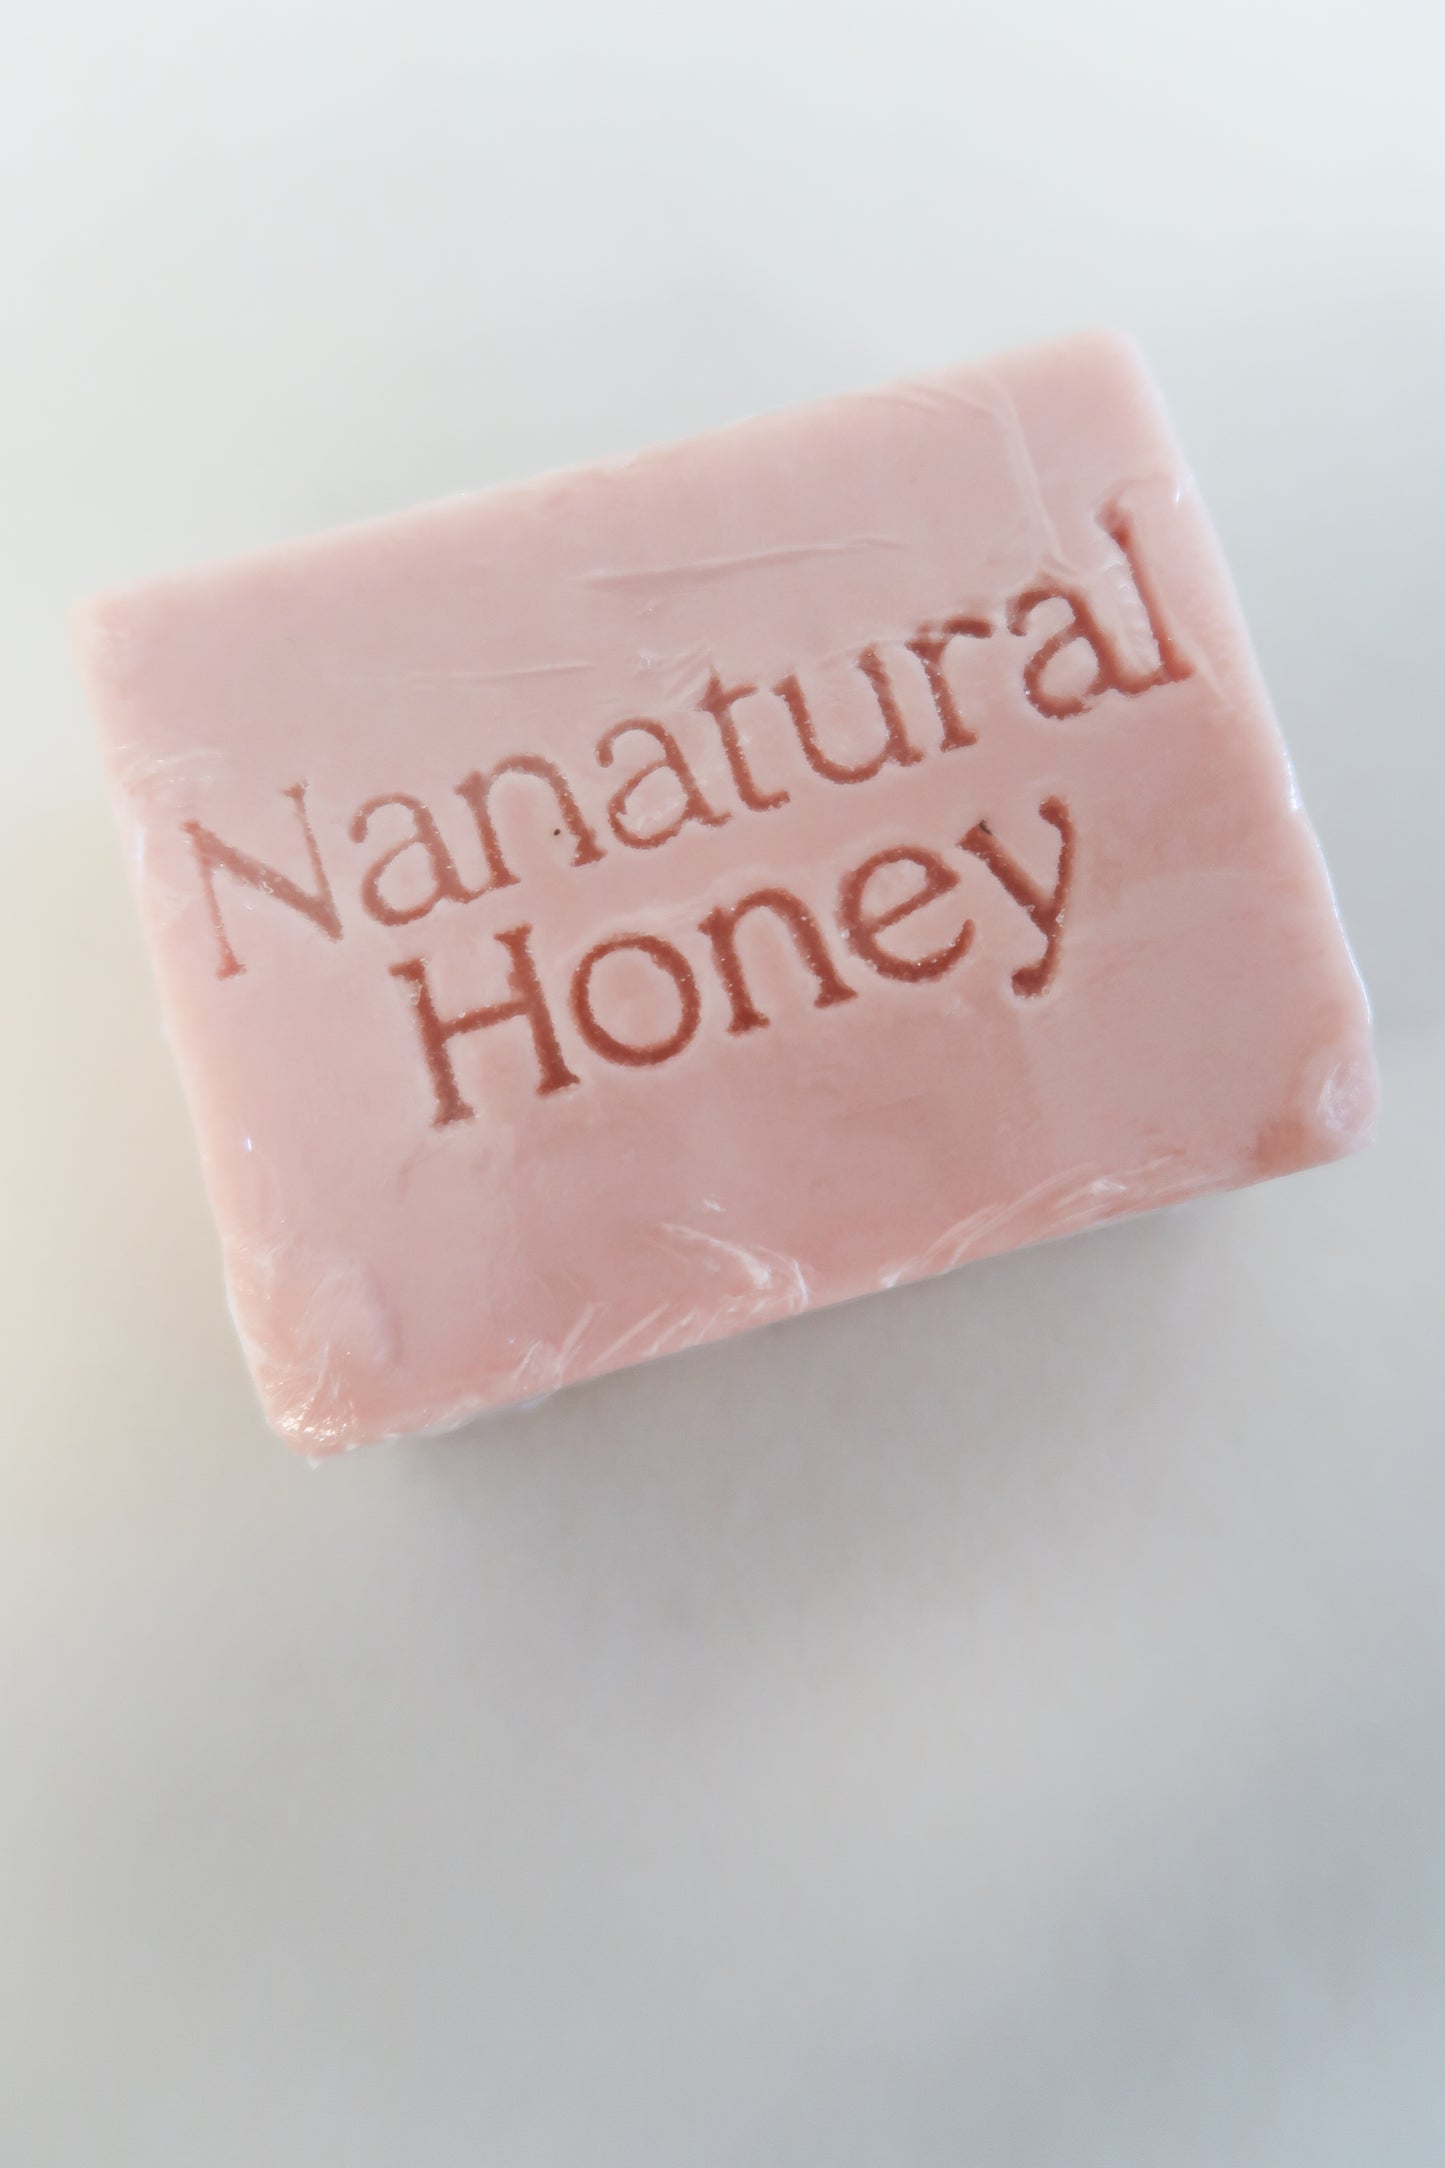 Nanatural Honey Soap